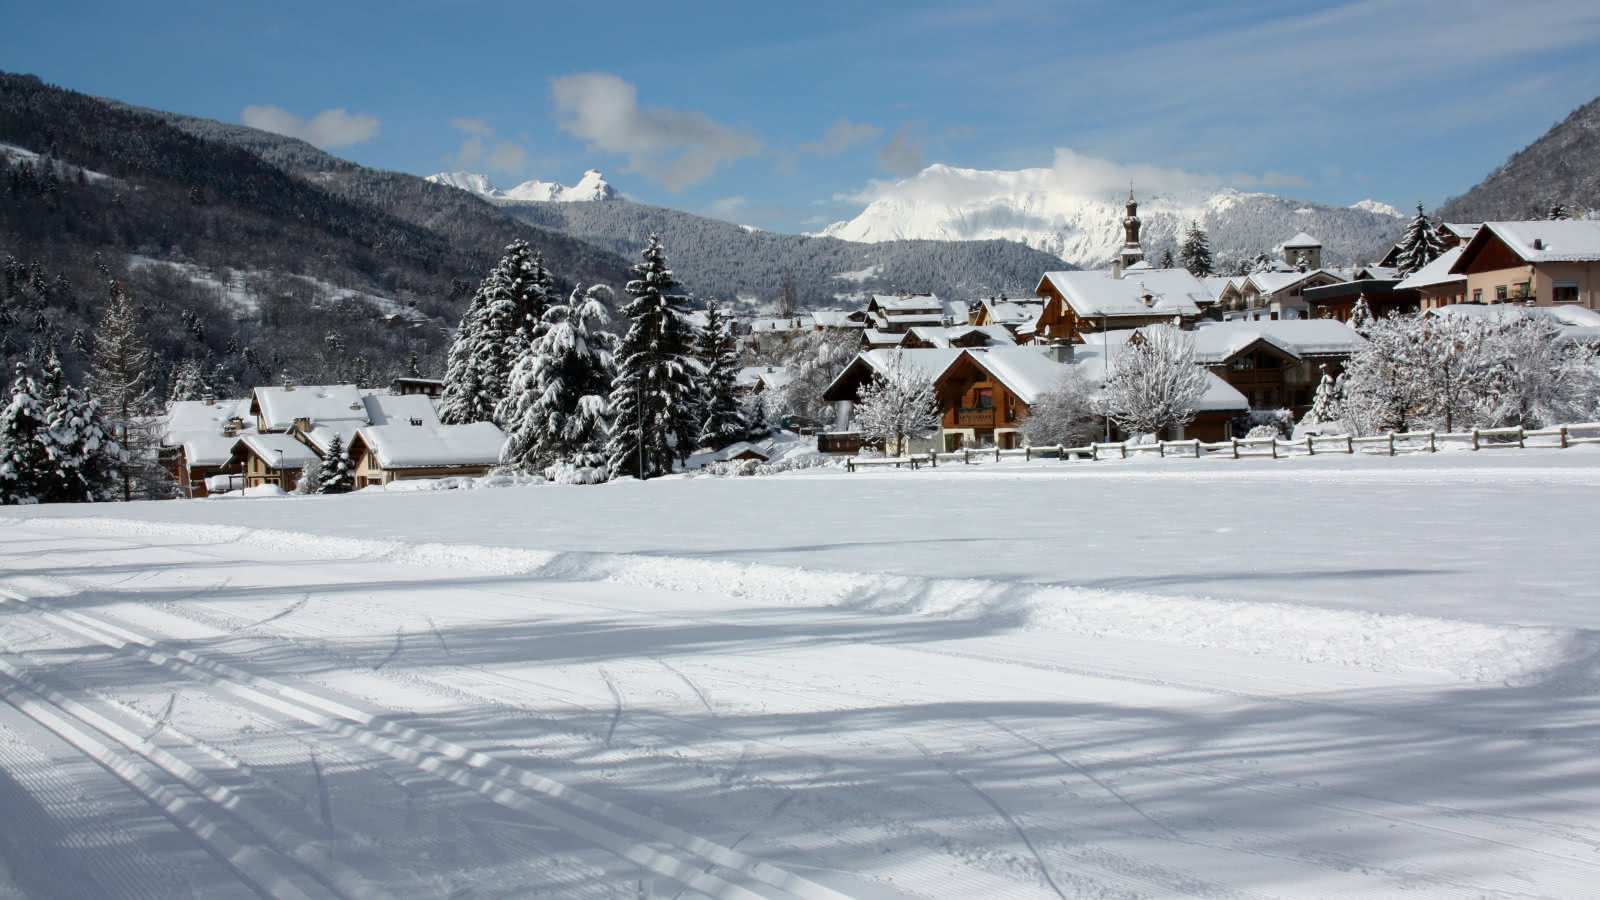 Pistes de ski de fond avec vue sur le village, juste après une chute de neige